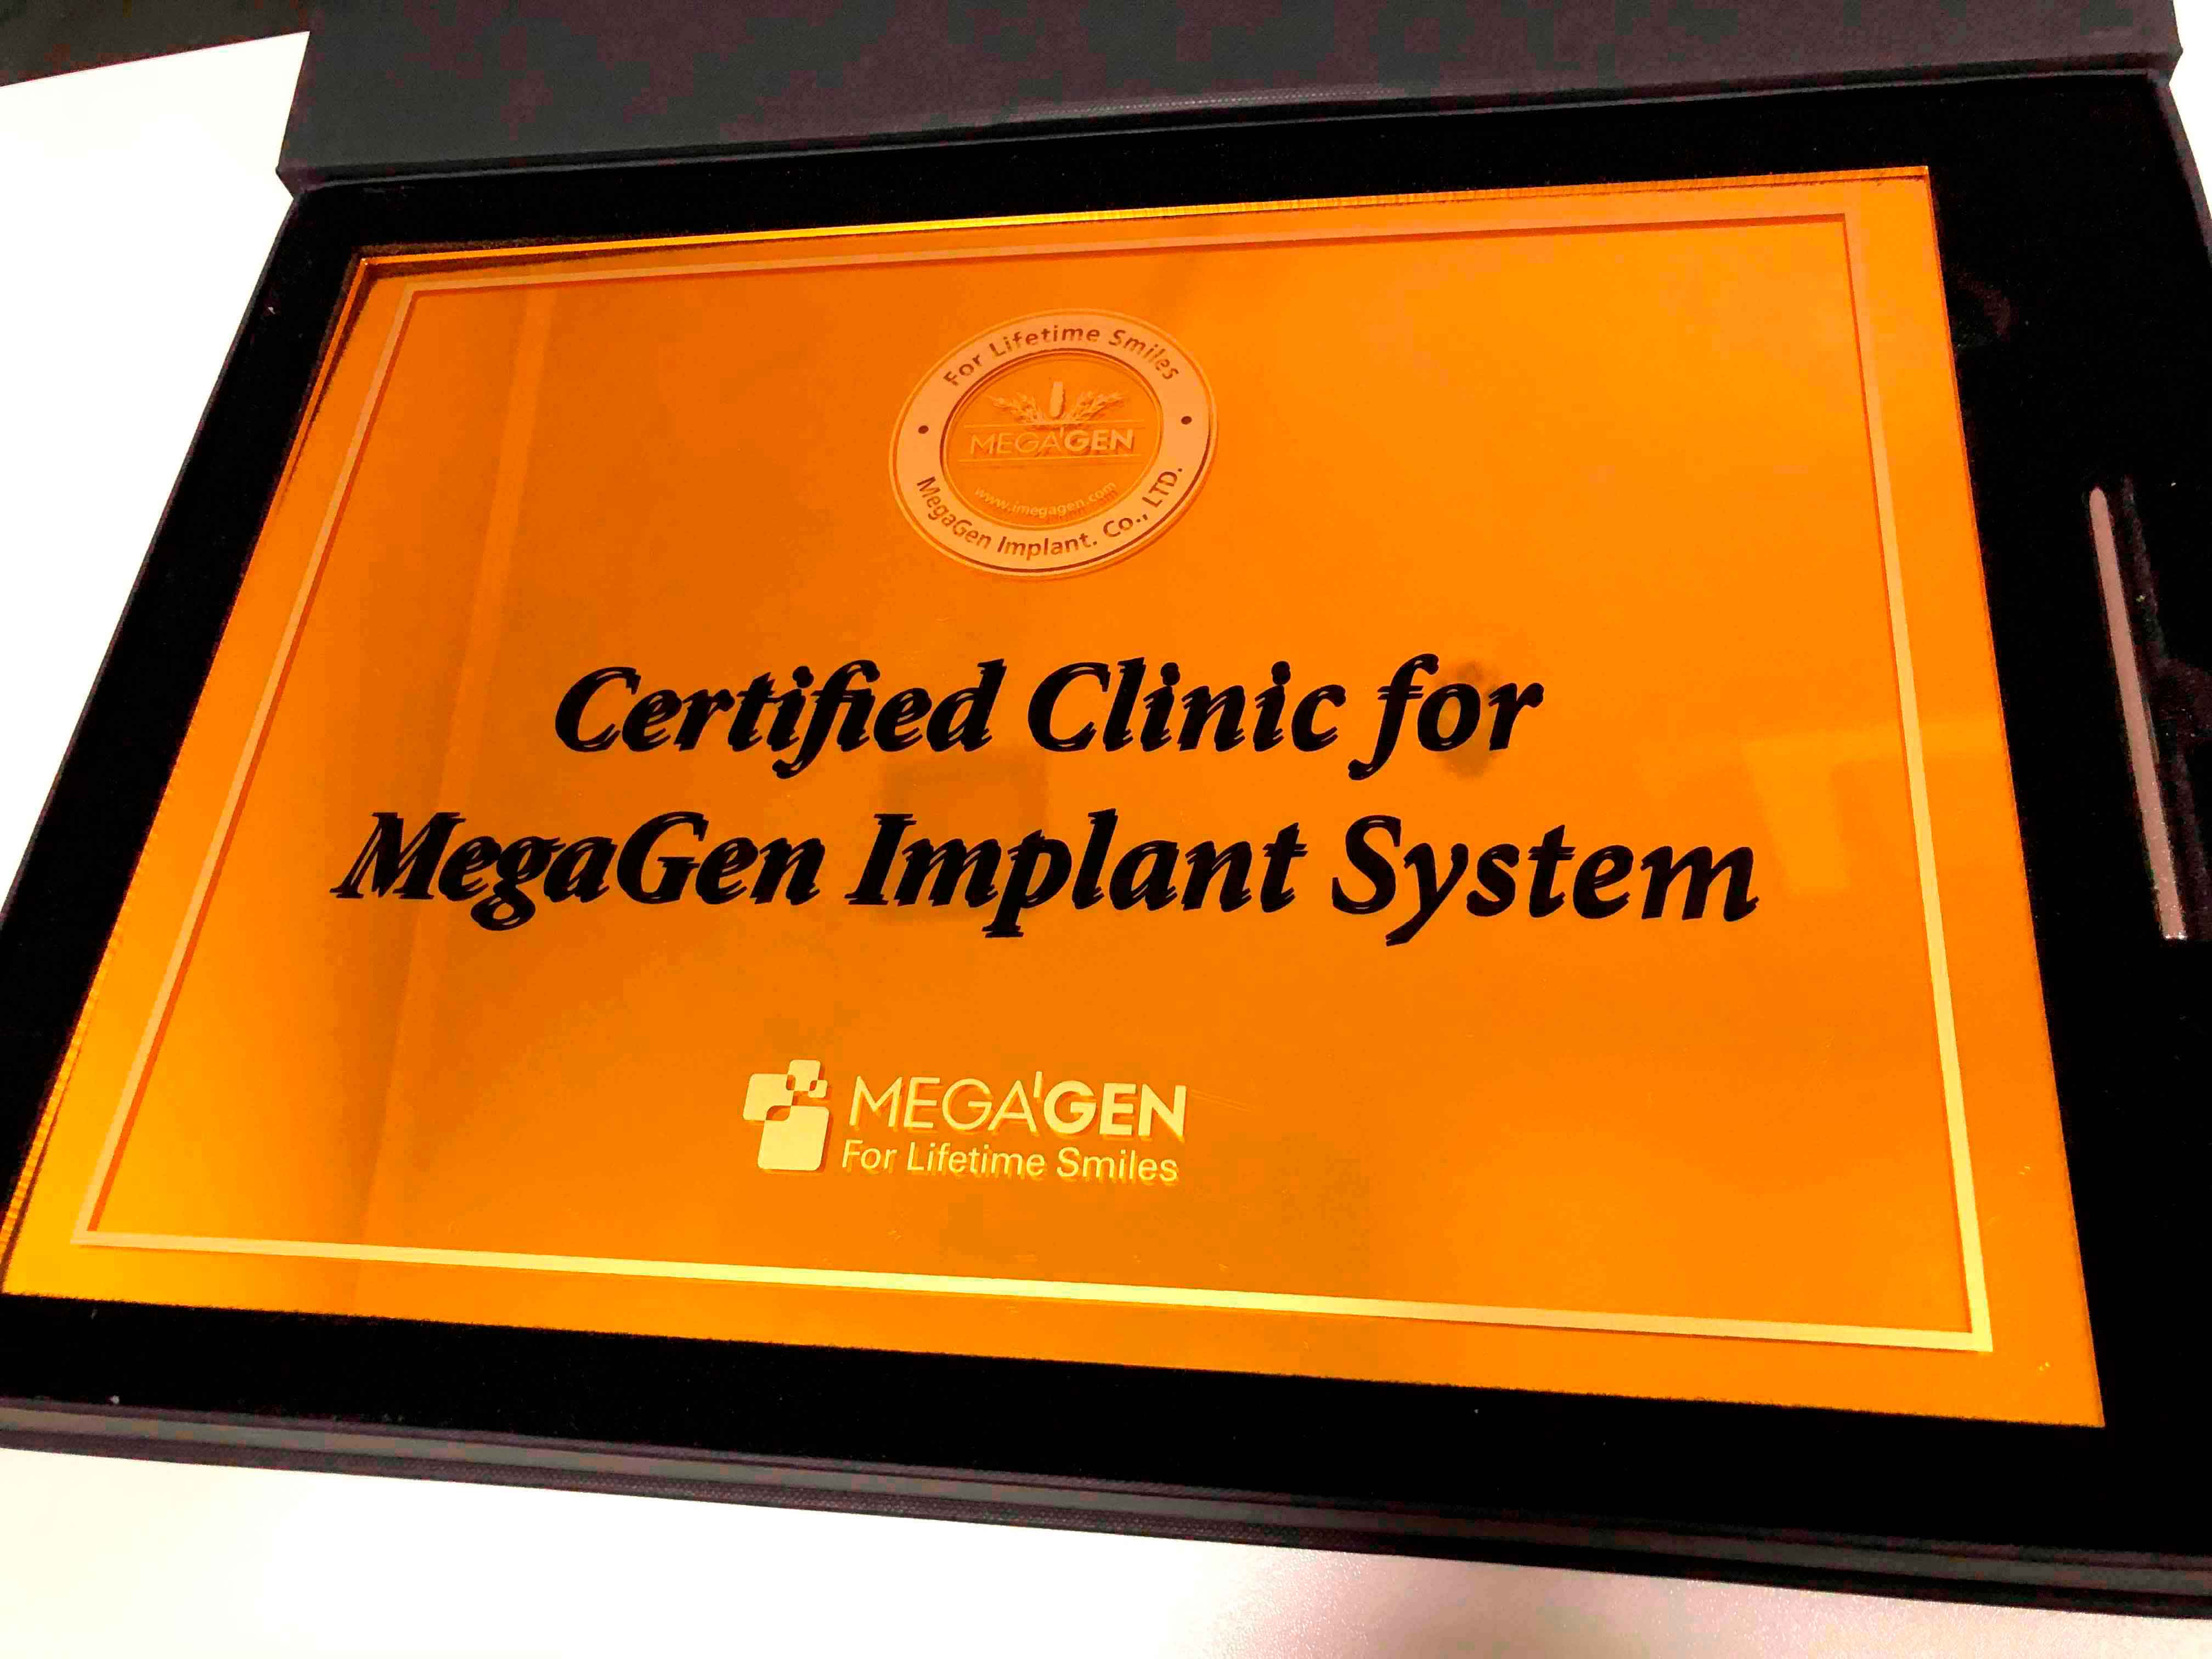 Признанием высокого качества имплантата Мегаджен стала награда независимой Международной организации Надёжное качество